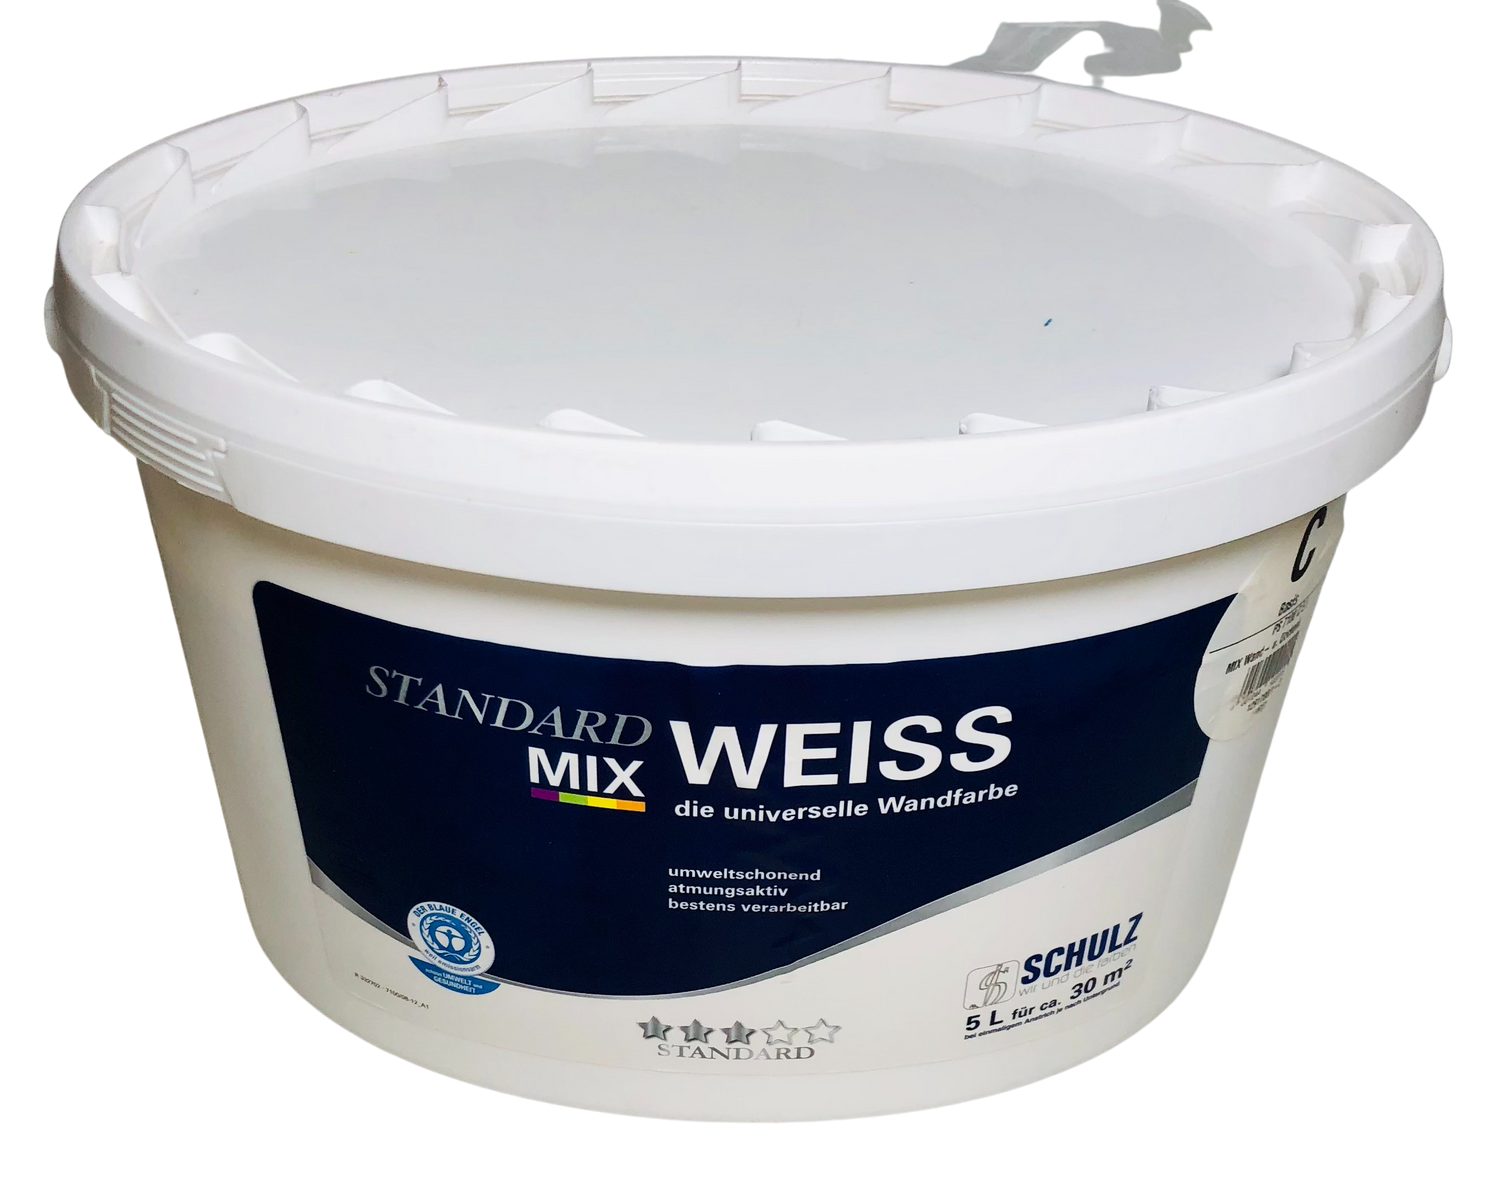 OPUS1 Vollton- und Abtönfarbe 5l Schulz Standard Weiss Mix Innenfarben Weiß Wand Anstrich Beschichtu